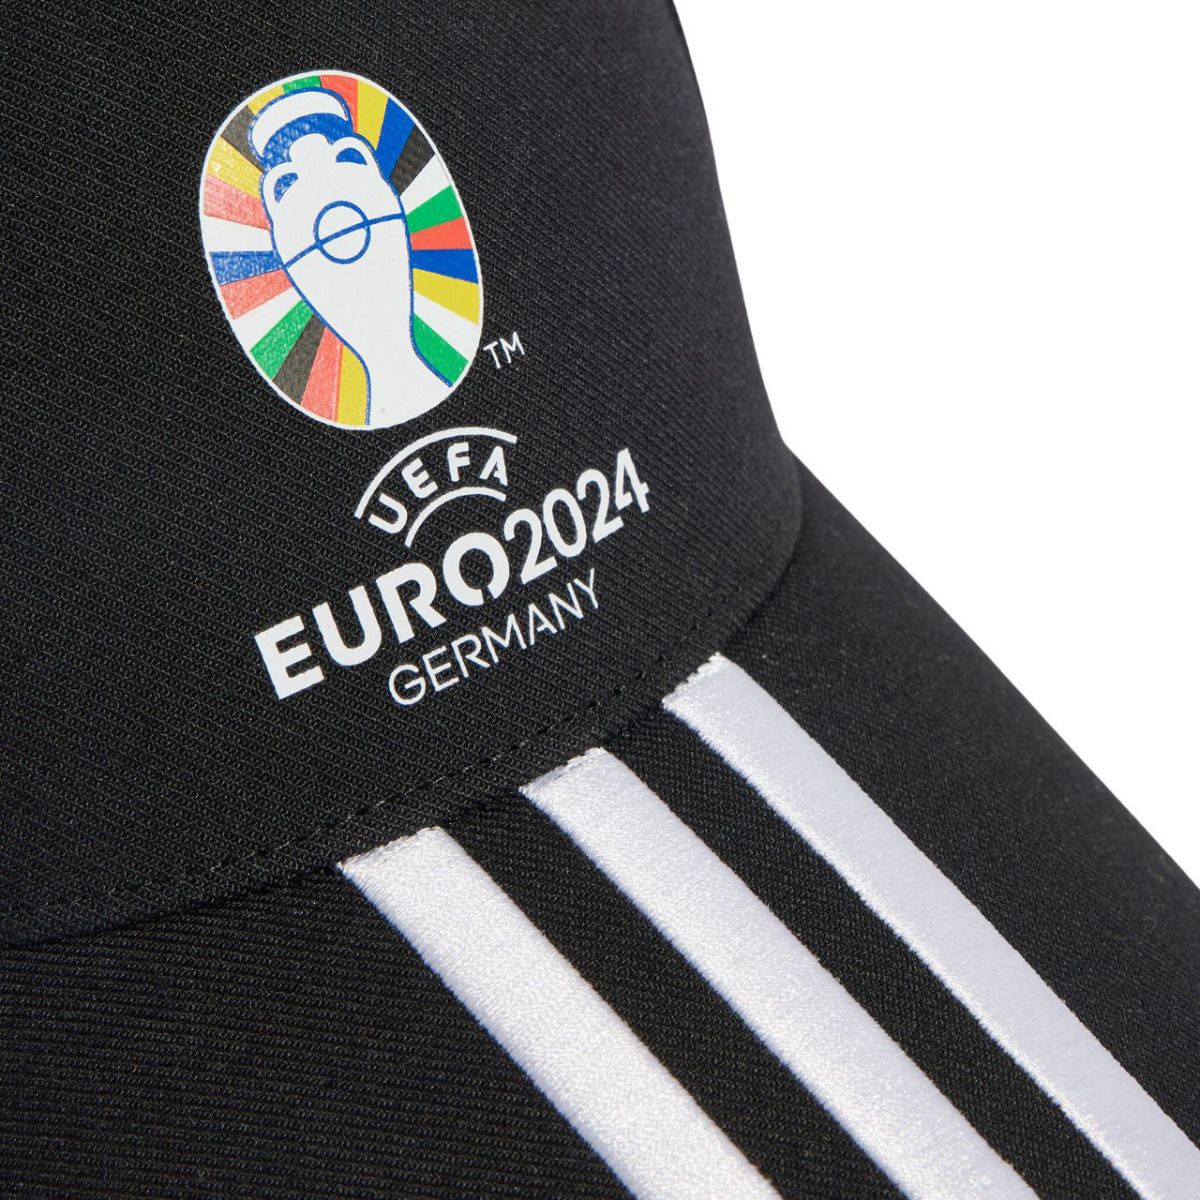 adidas Dámska čiapka šiltovka UEFA Euro 24™ Official Emblem OSFW IT3313